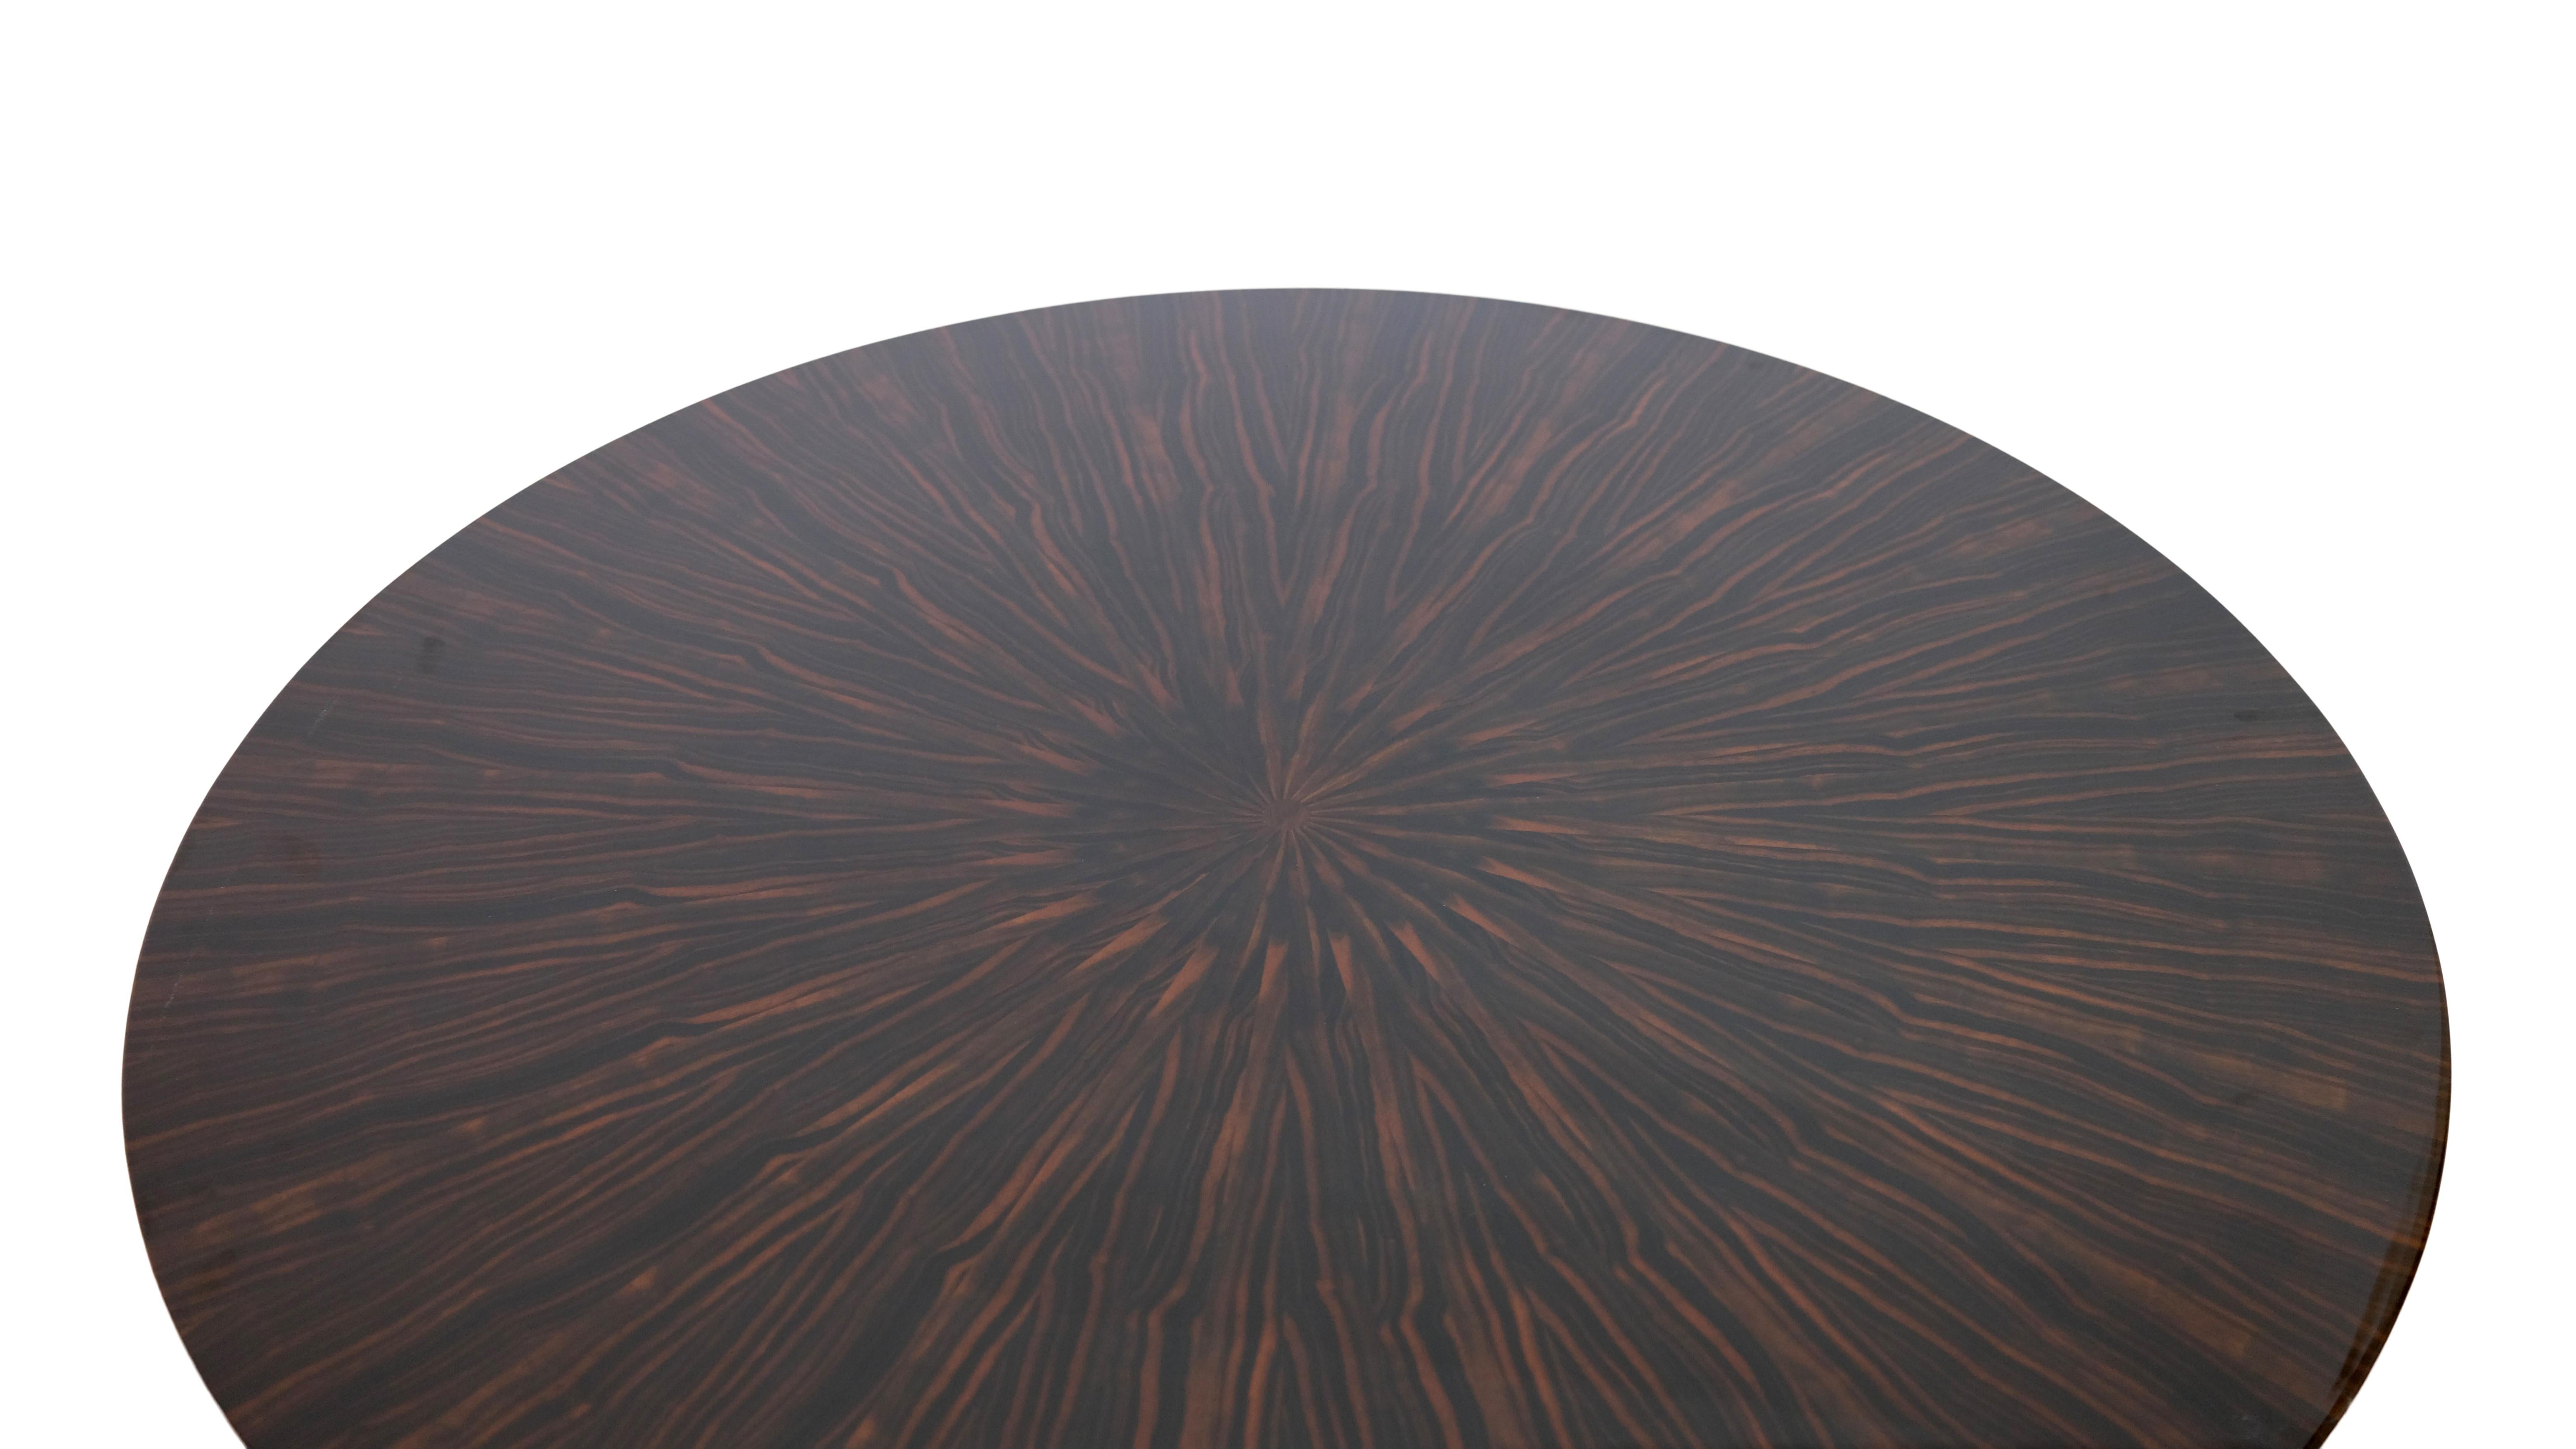 Table de salle à manger ronde de style Art Déco
Macassar, laqué brillant
Laque noire

Fabrication dans le style art déco, années 2000

Dimensions :
Diamètre : 119 cm
Hauteur : 75 cm.